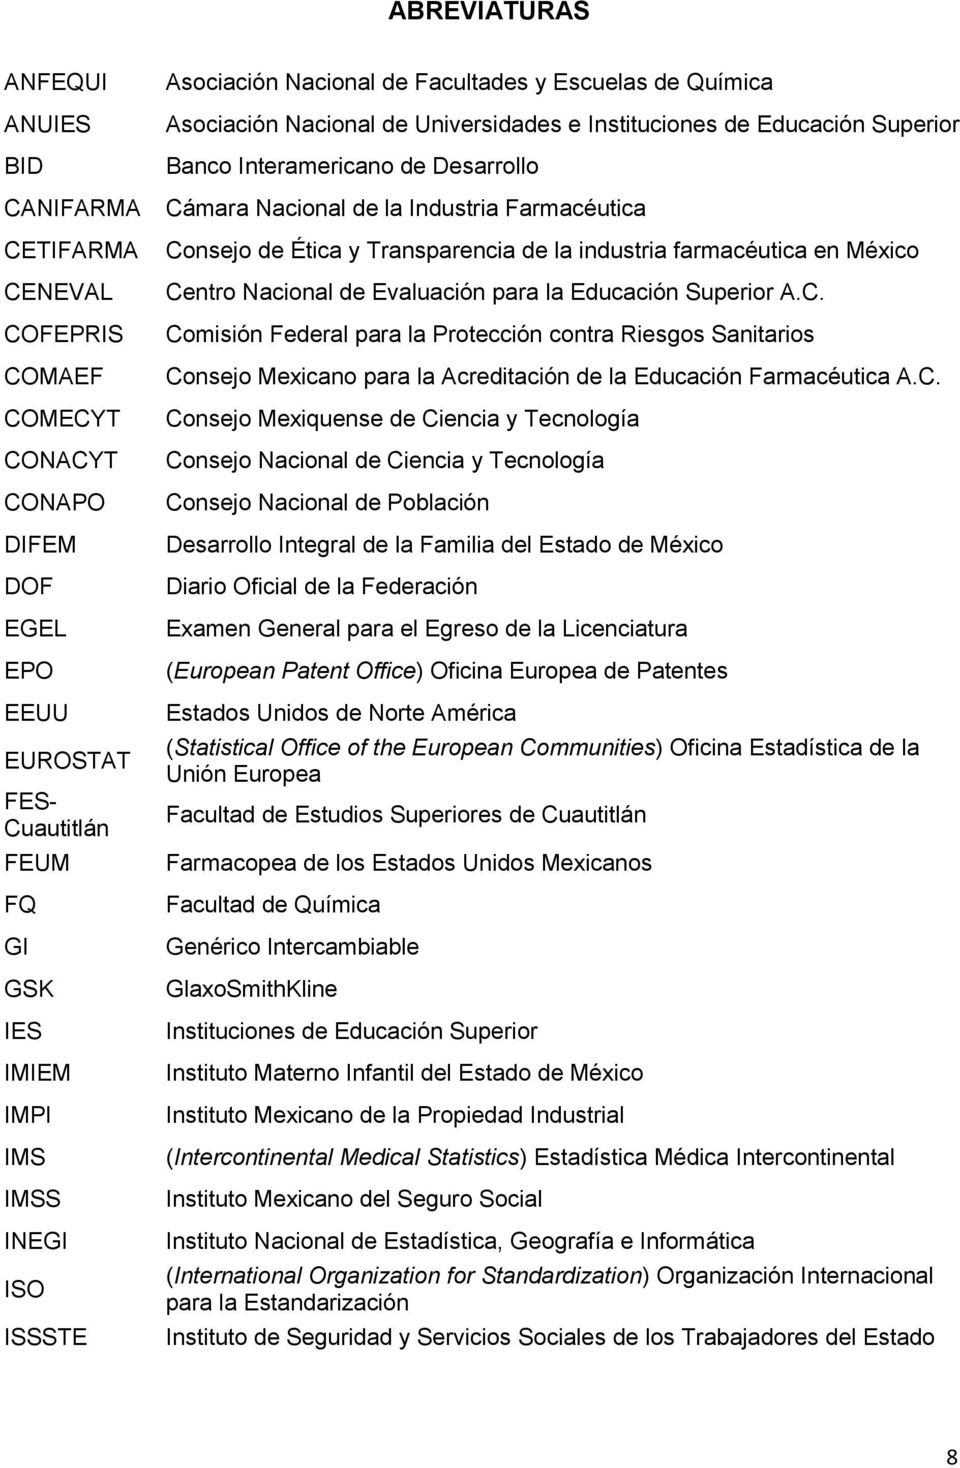 Industria Farmacéutica Consejo de Ética y Transparencia de la industria farmacéutica en México Centro Nacional de Evaluación para la Educación Superior A.C. Comisión Federal para la Protección contra Riesgos Sanitarios Consejo Mexicano para la Acreditación de la Educación Farmacéutica A.